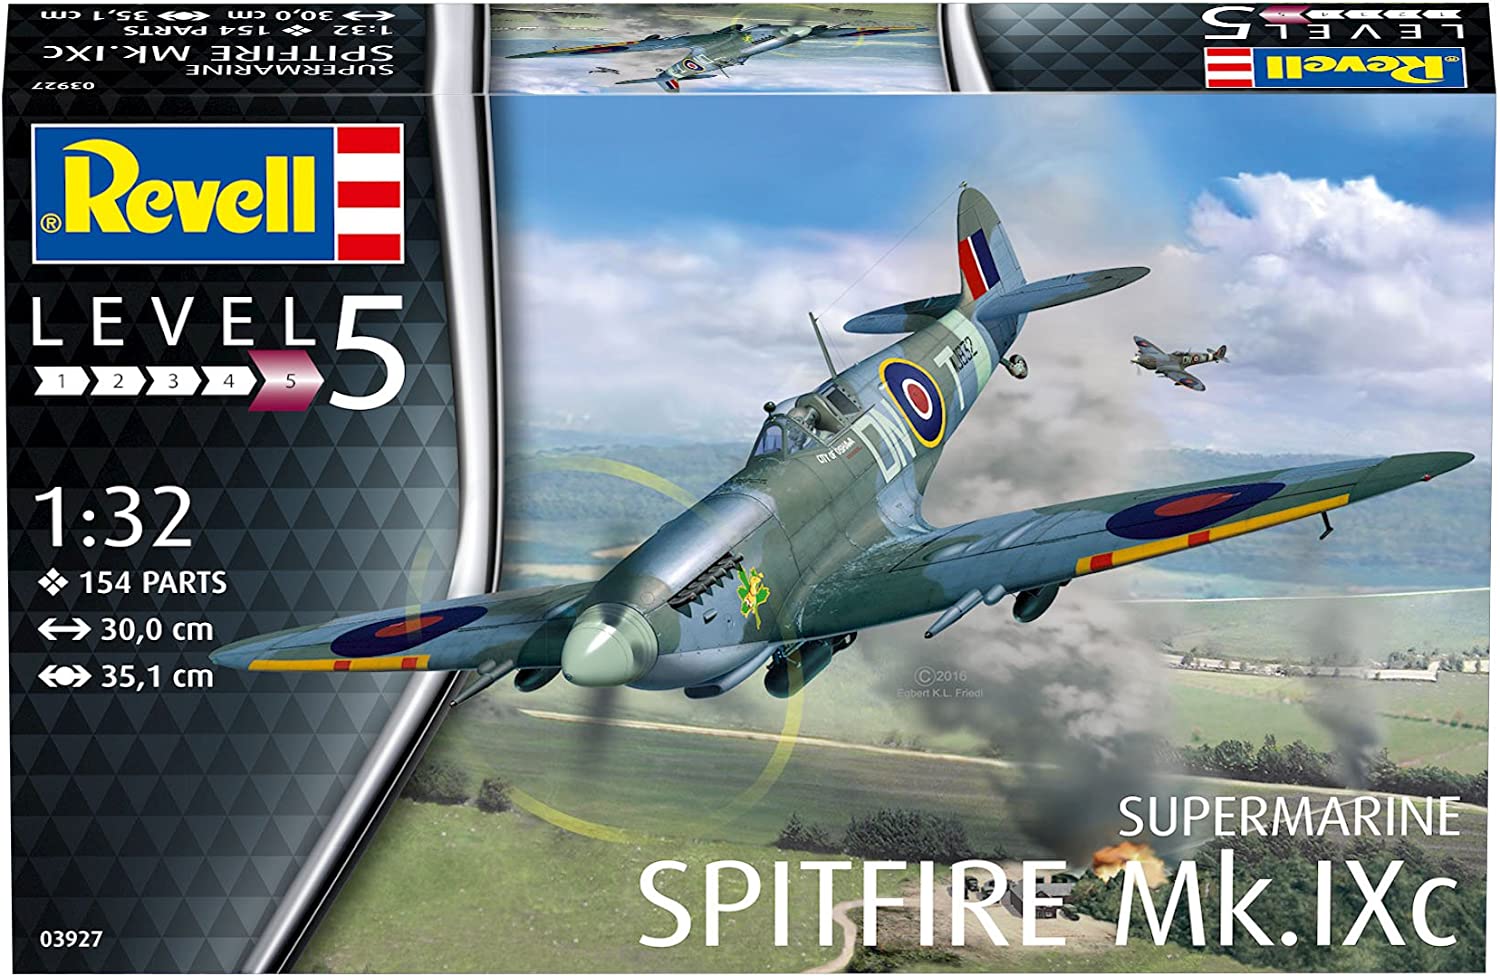 『Spitfire Mk.1 (1/32・レベル/Revell)』のご紹介